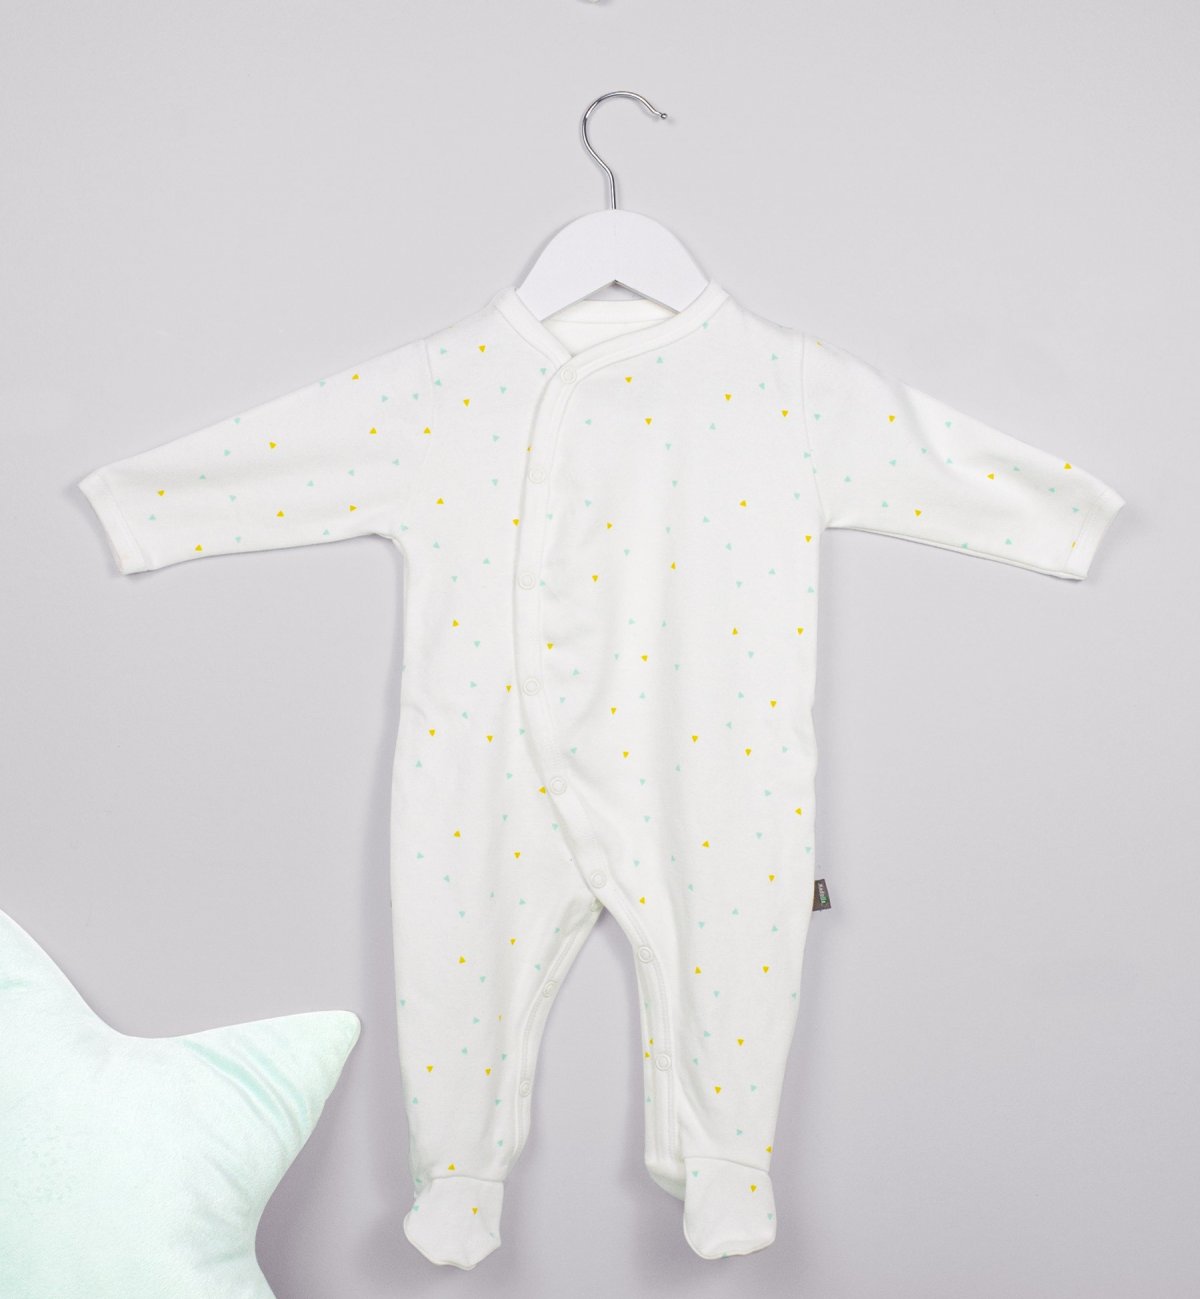 Pijama bebé de Verão em malha de Algodão Orgânico com motivos triângulos Kadolis